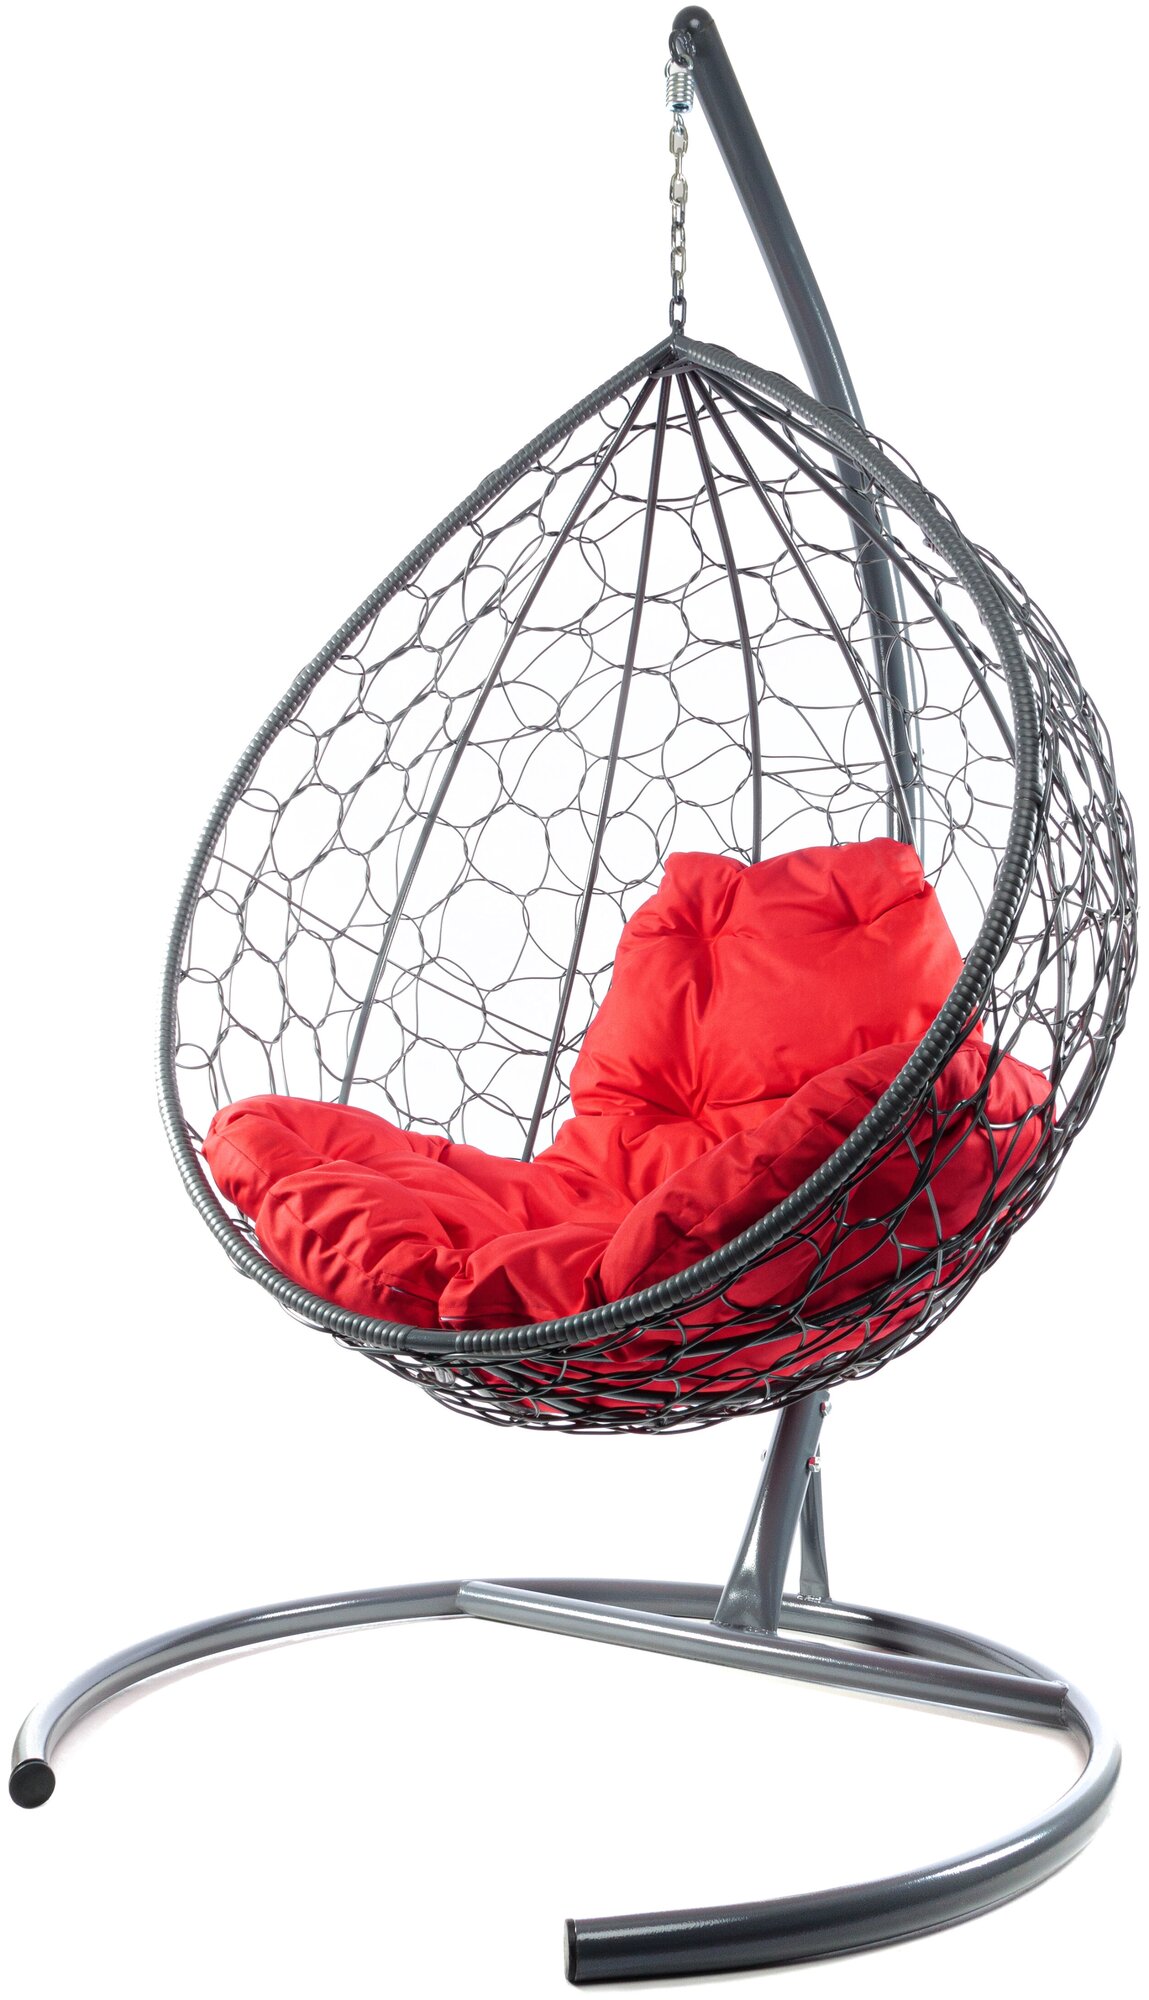 Подвесное кресло M-Group капля ротанг серое, красная подушка